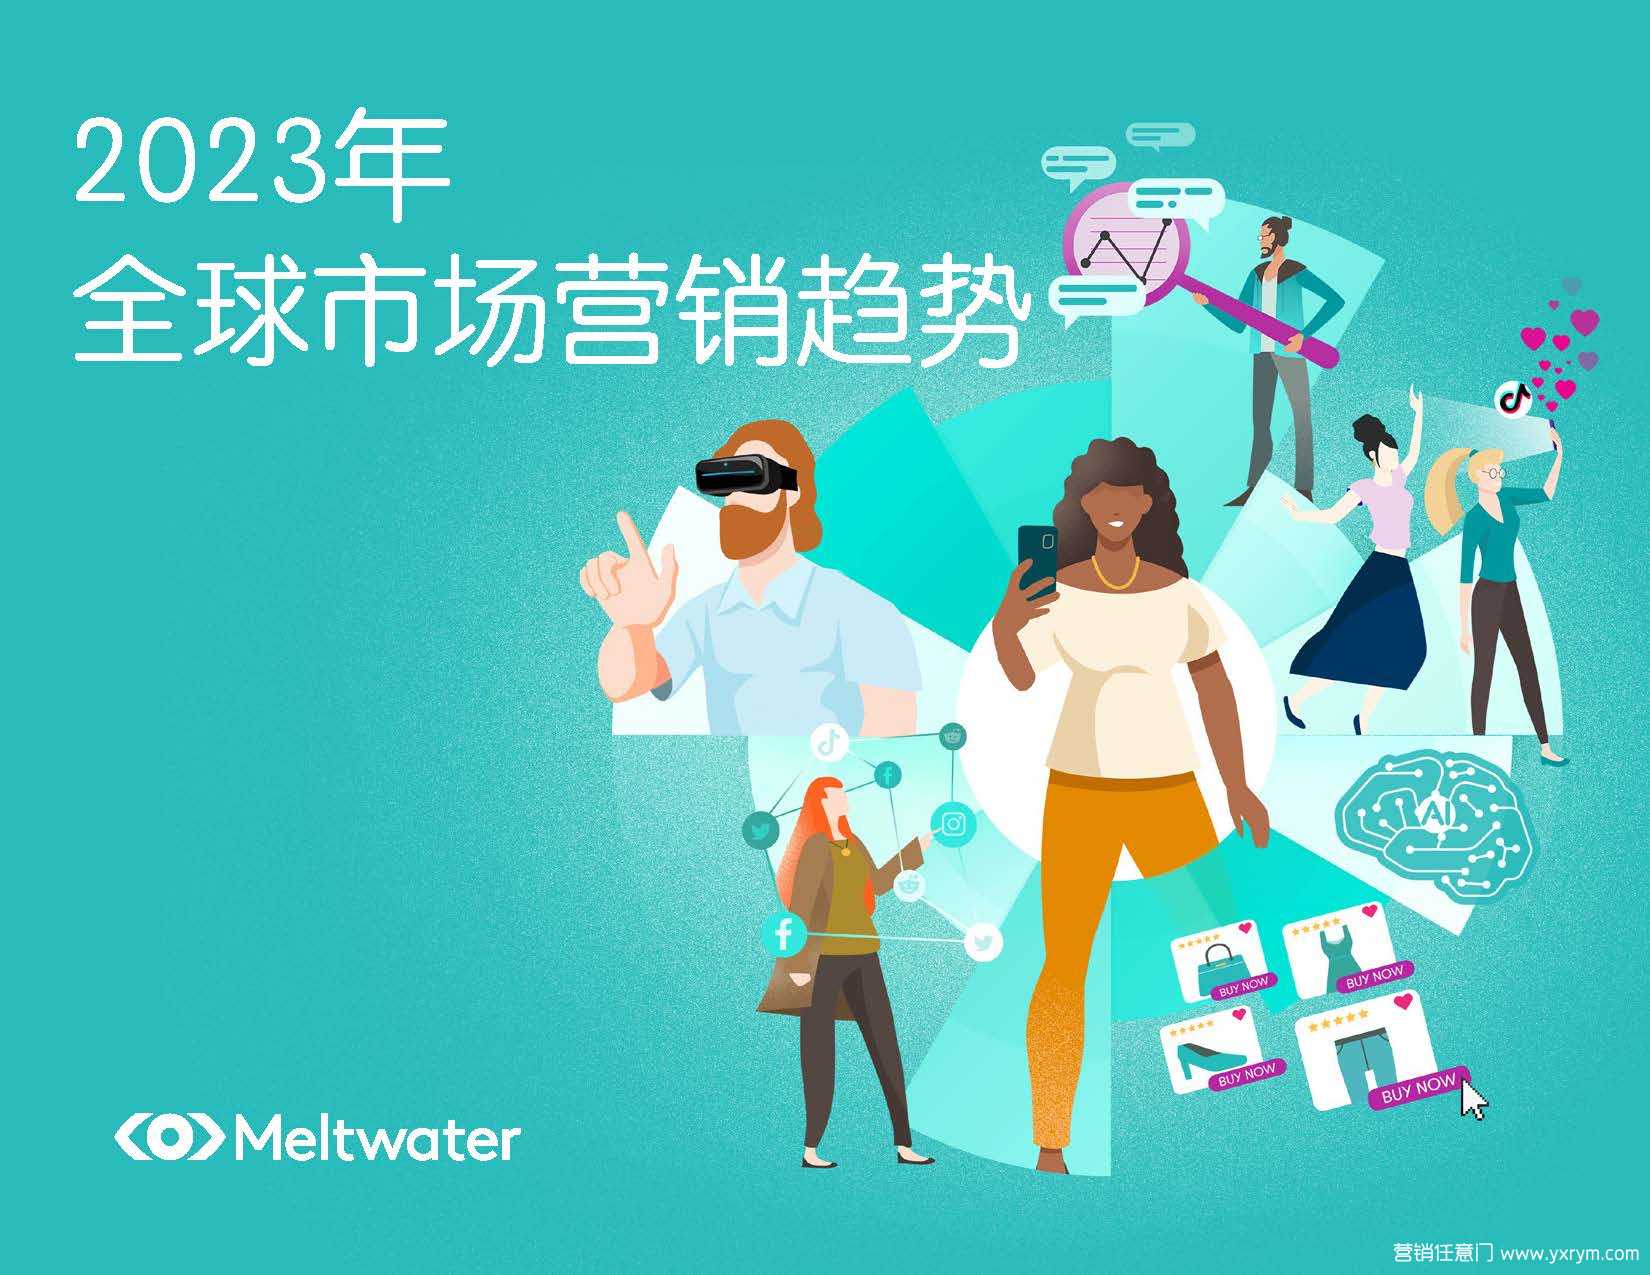 【营销任意门】2023年全球市场营销趋势报告-Meltwater融文